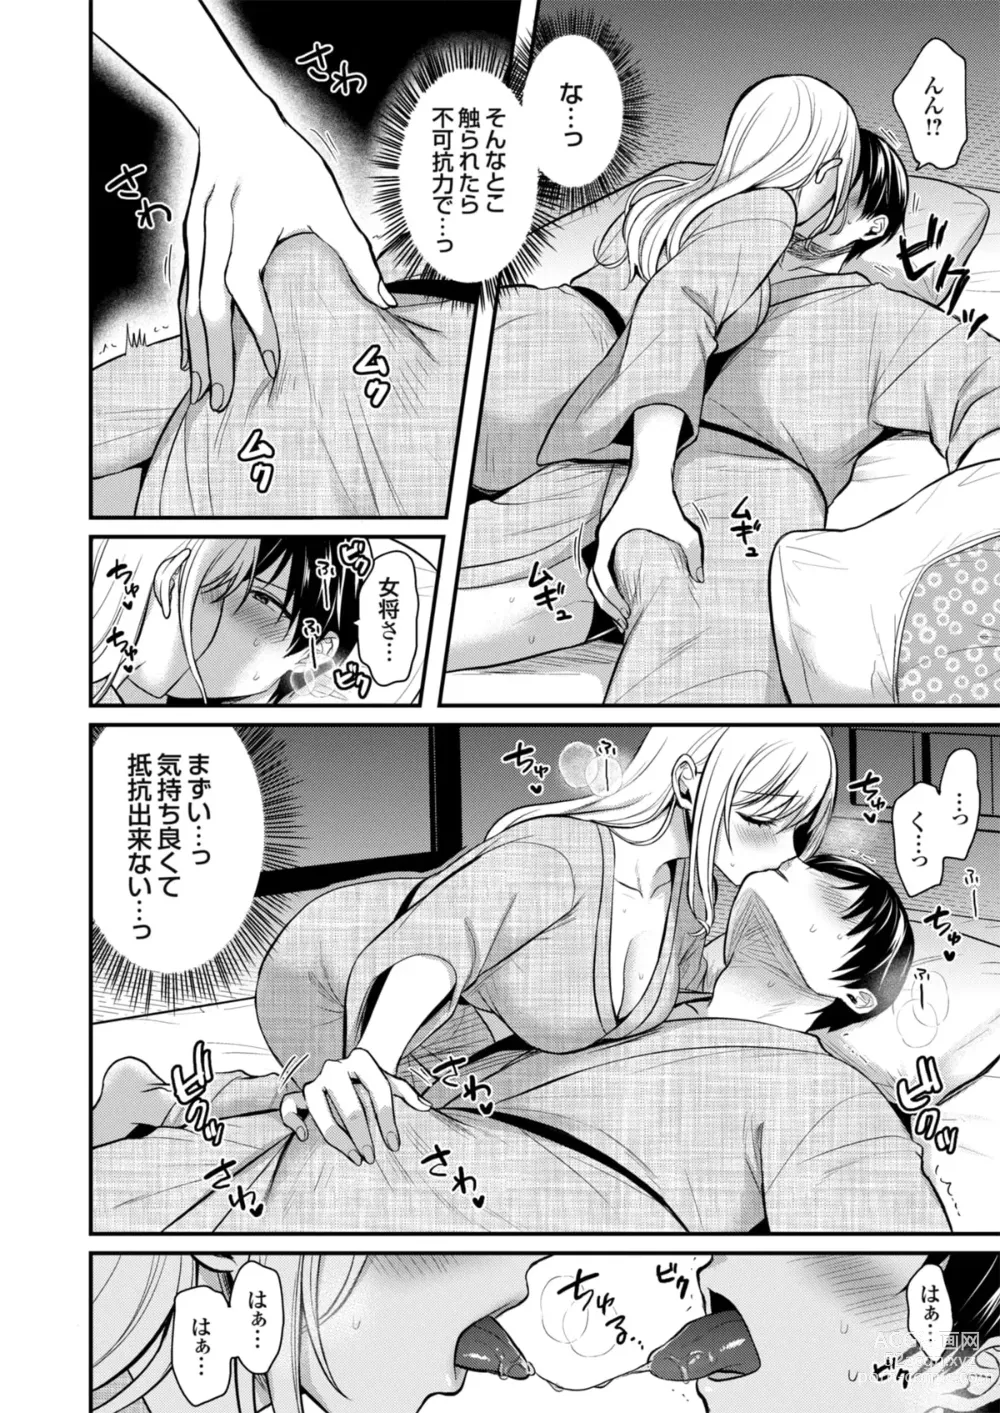 Page 14 of manga Ore no Natsuyasumi wa Gal no Wakaokami to Beit Seikatsu!?